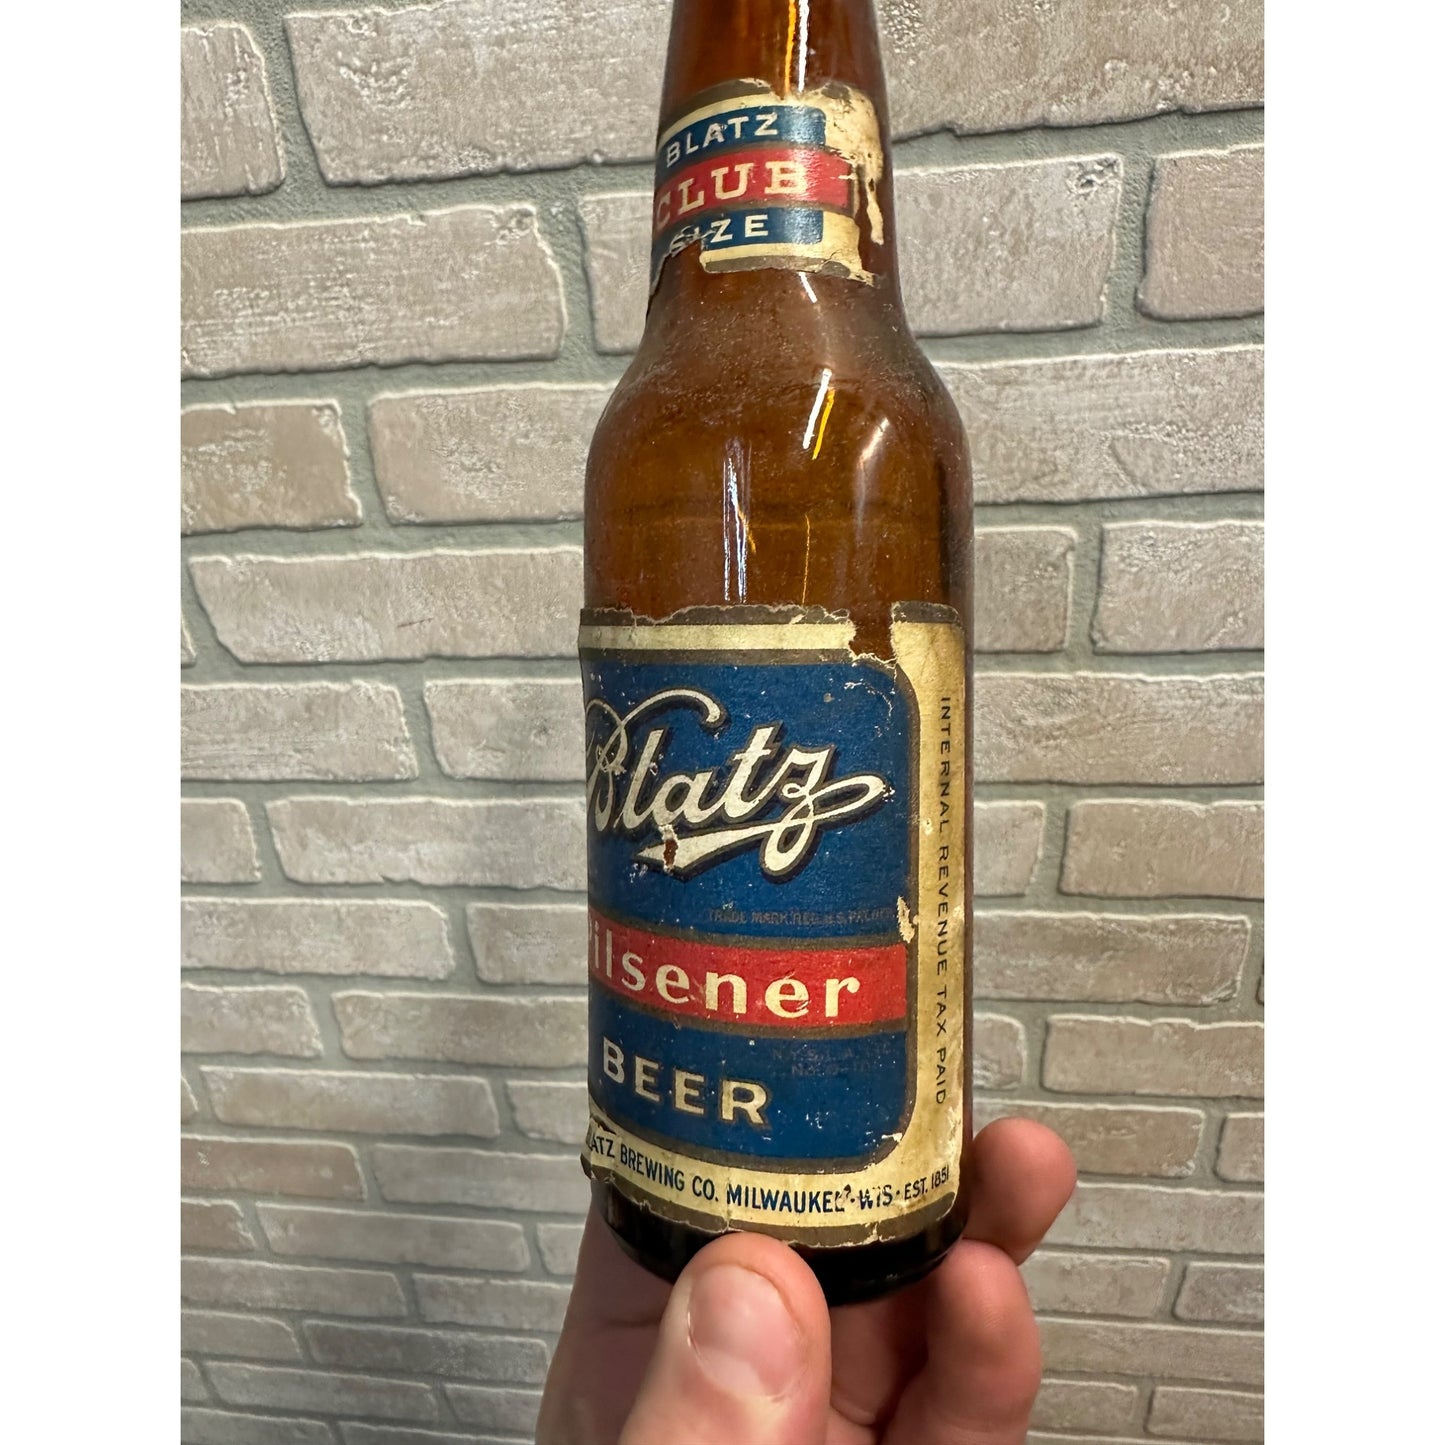 Vintage 1940s Blatz Pilsner Beer Bottle w/ Paper Label IRTP Club Size